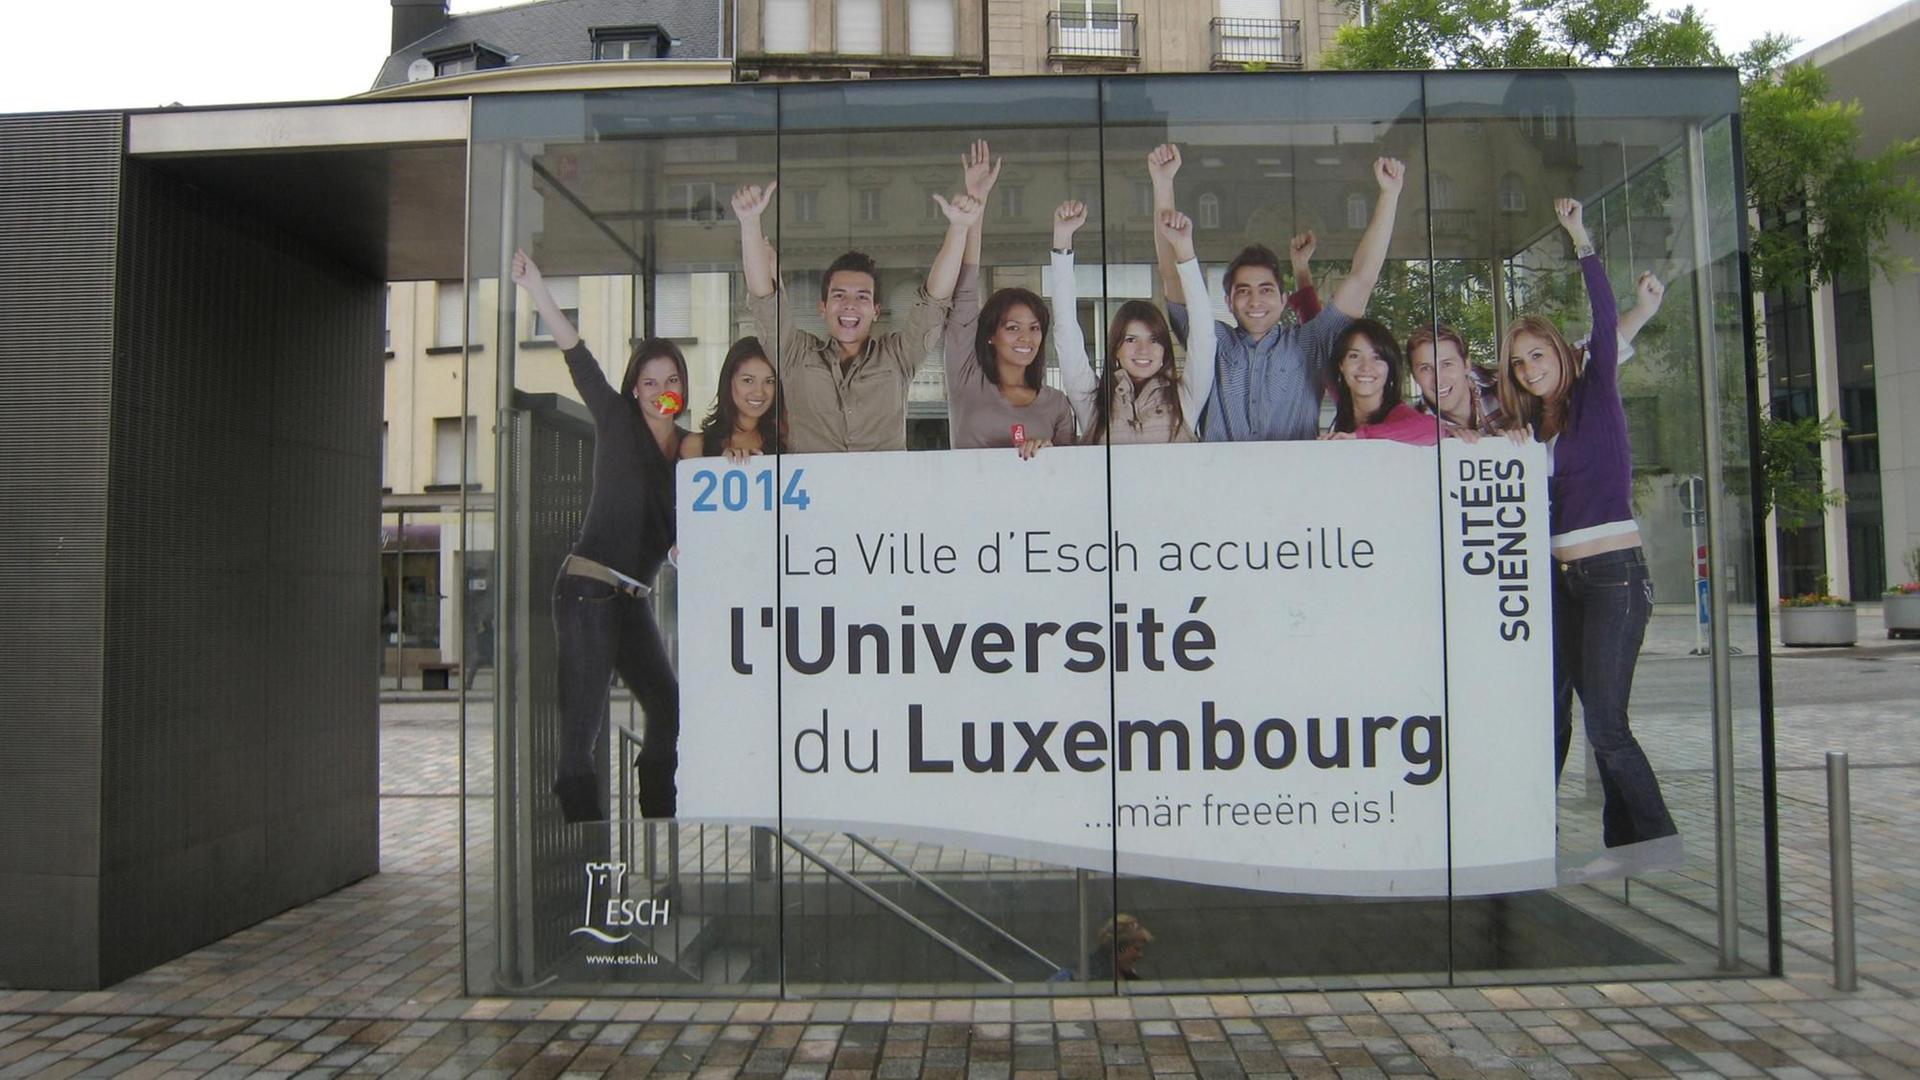 Werbung für die neue Universität in Luxemburg an einer Bushaltestelle